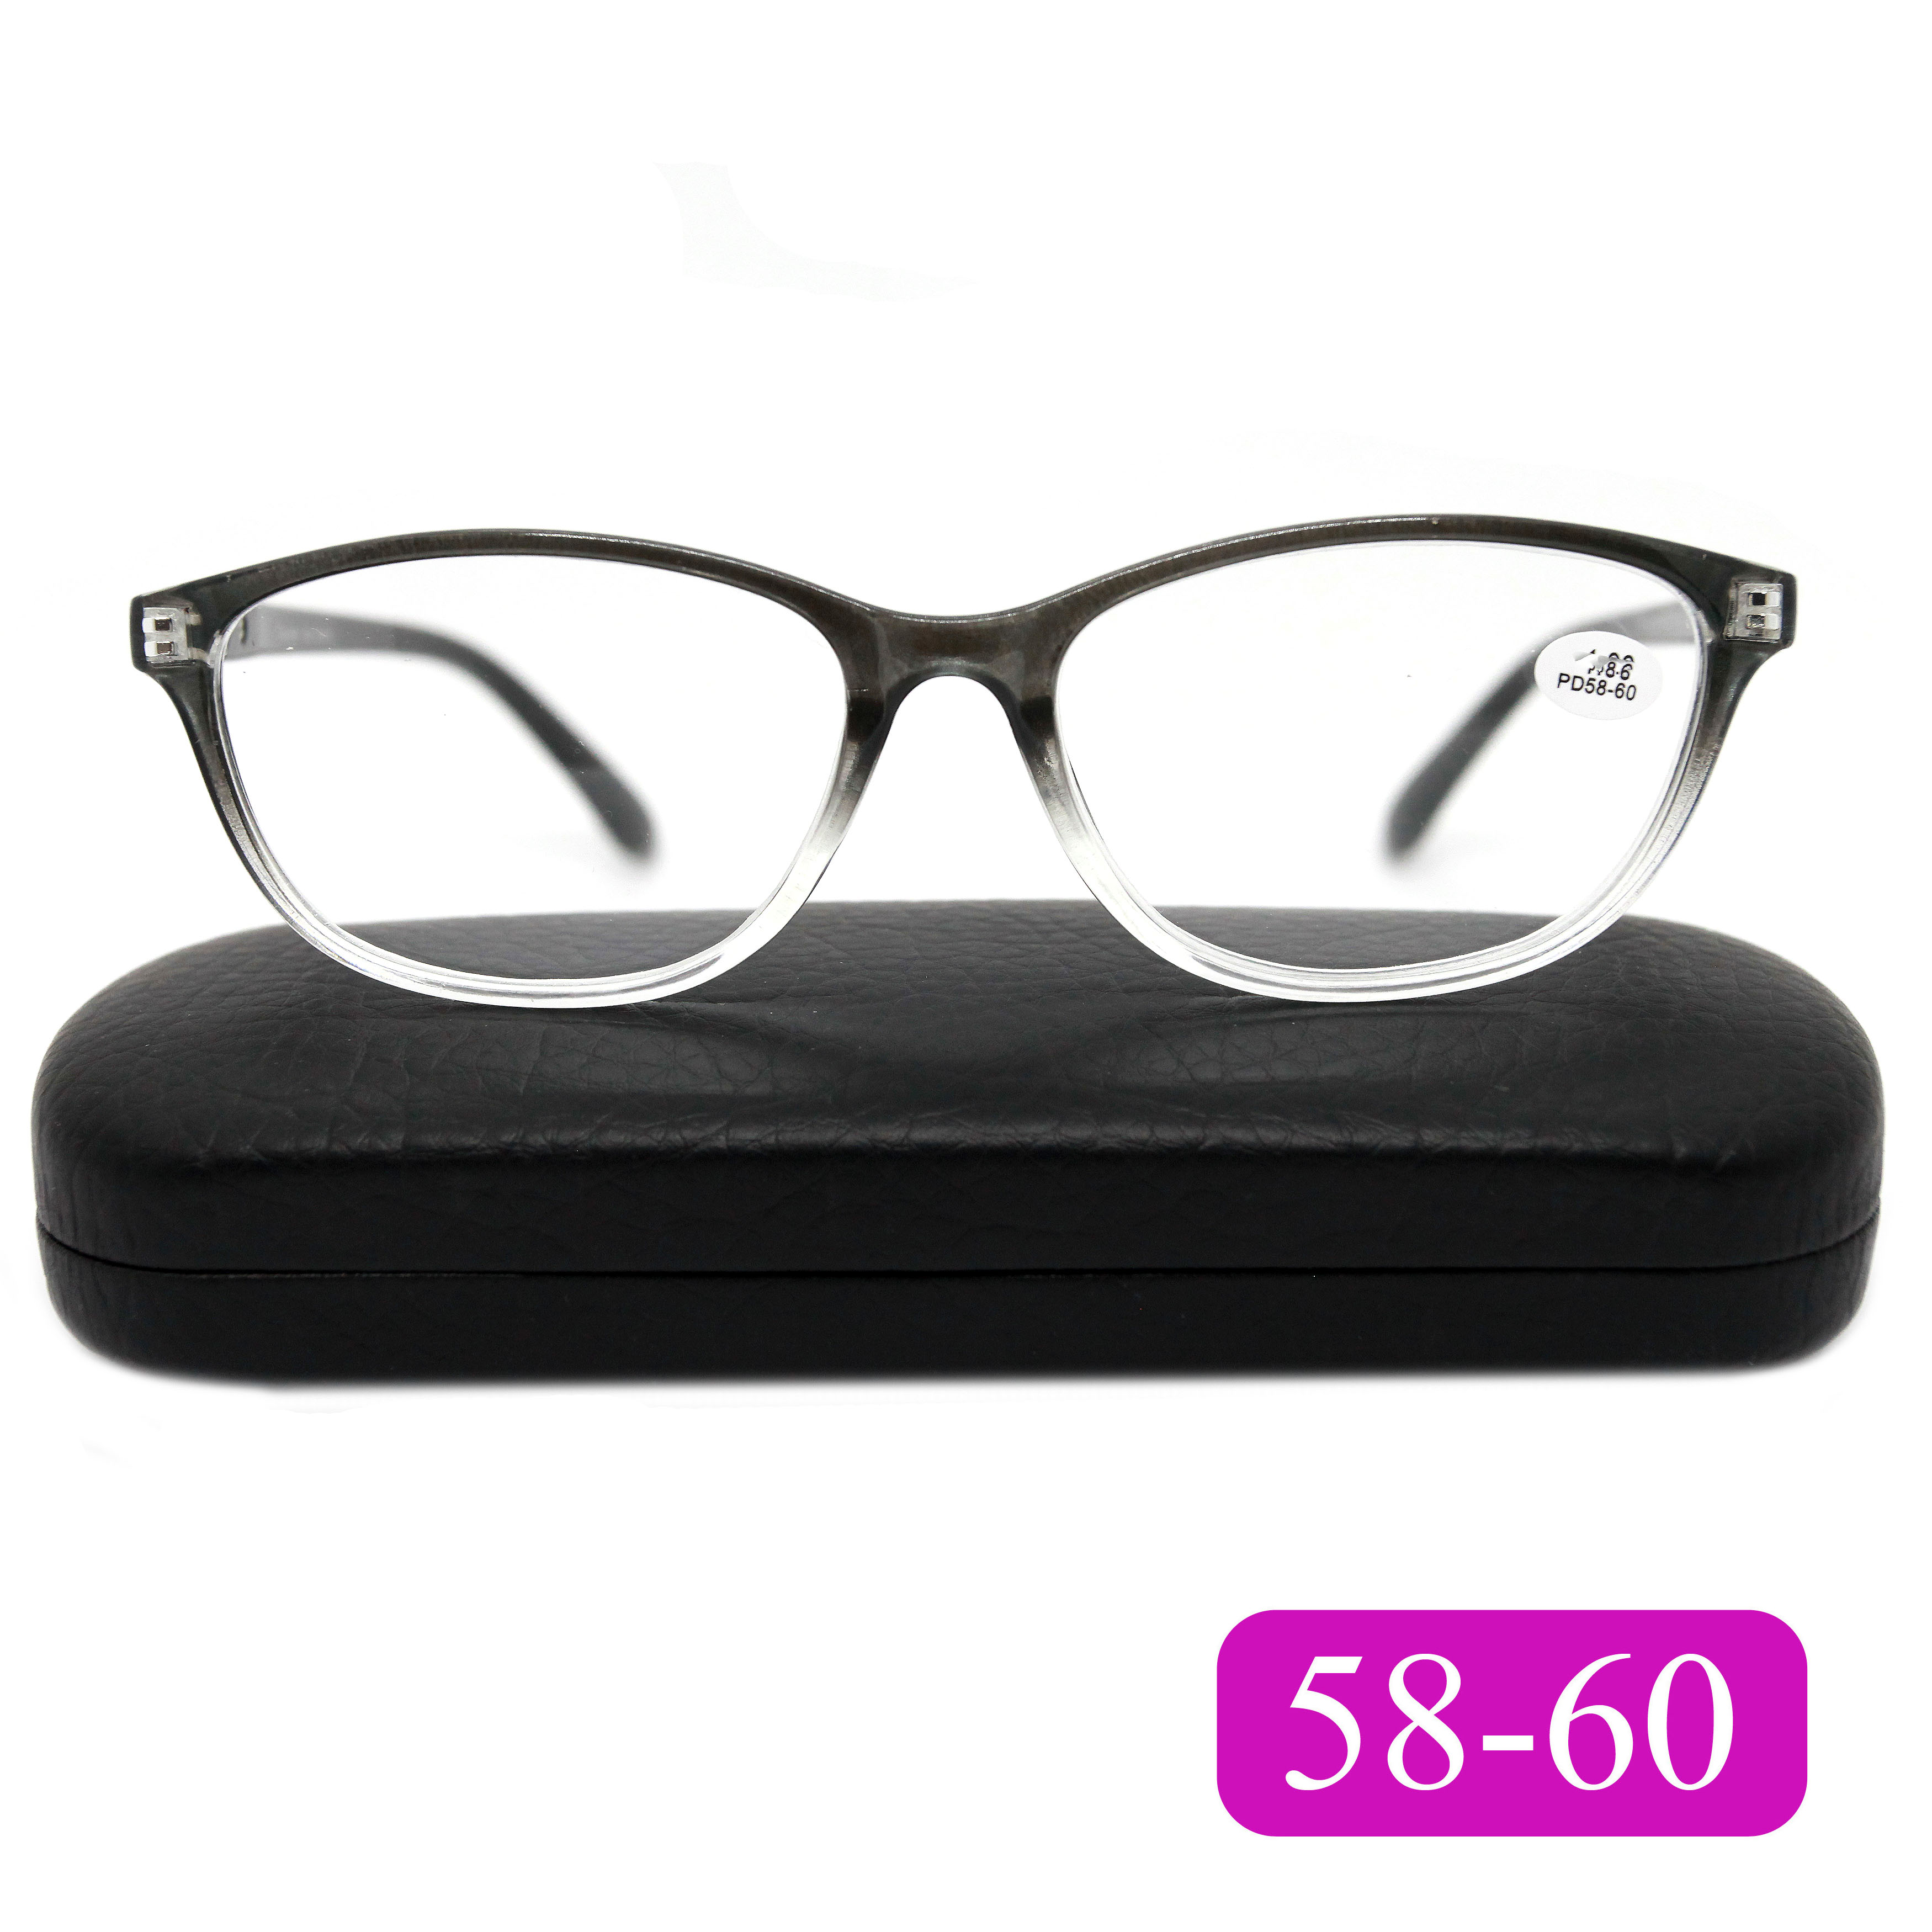 Готовые очки для чтения Traveler 7007 +3.00, c футляром, цвет серый, РЦ 58-60